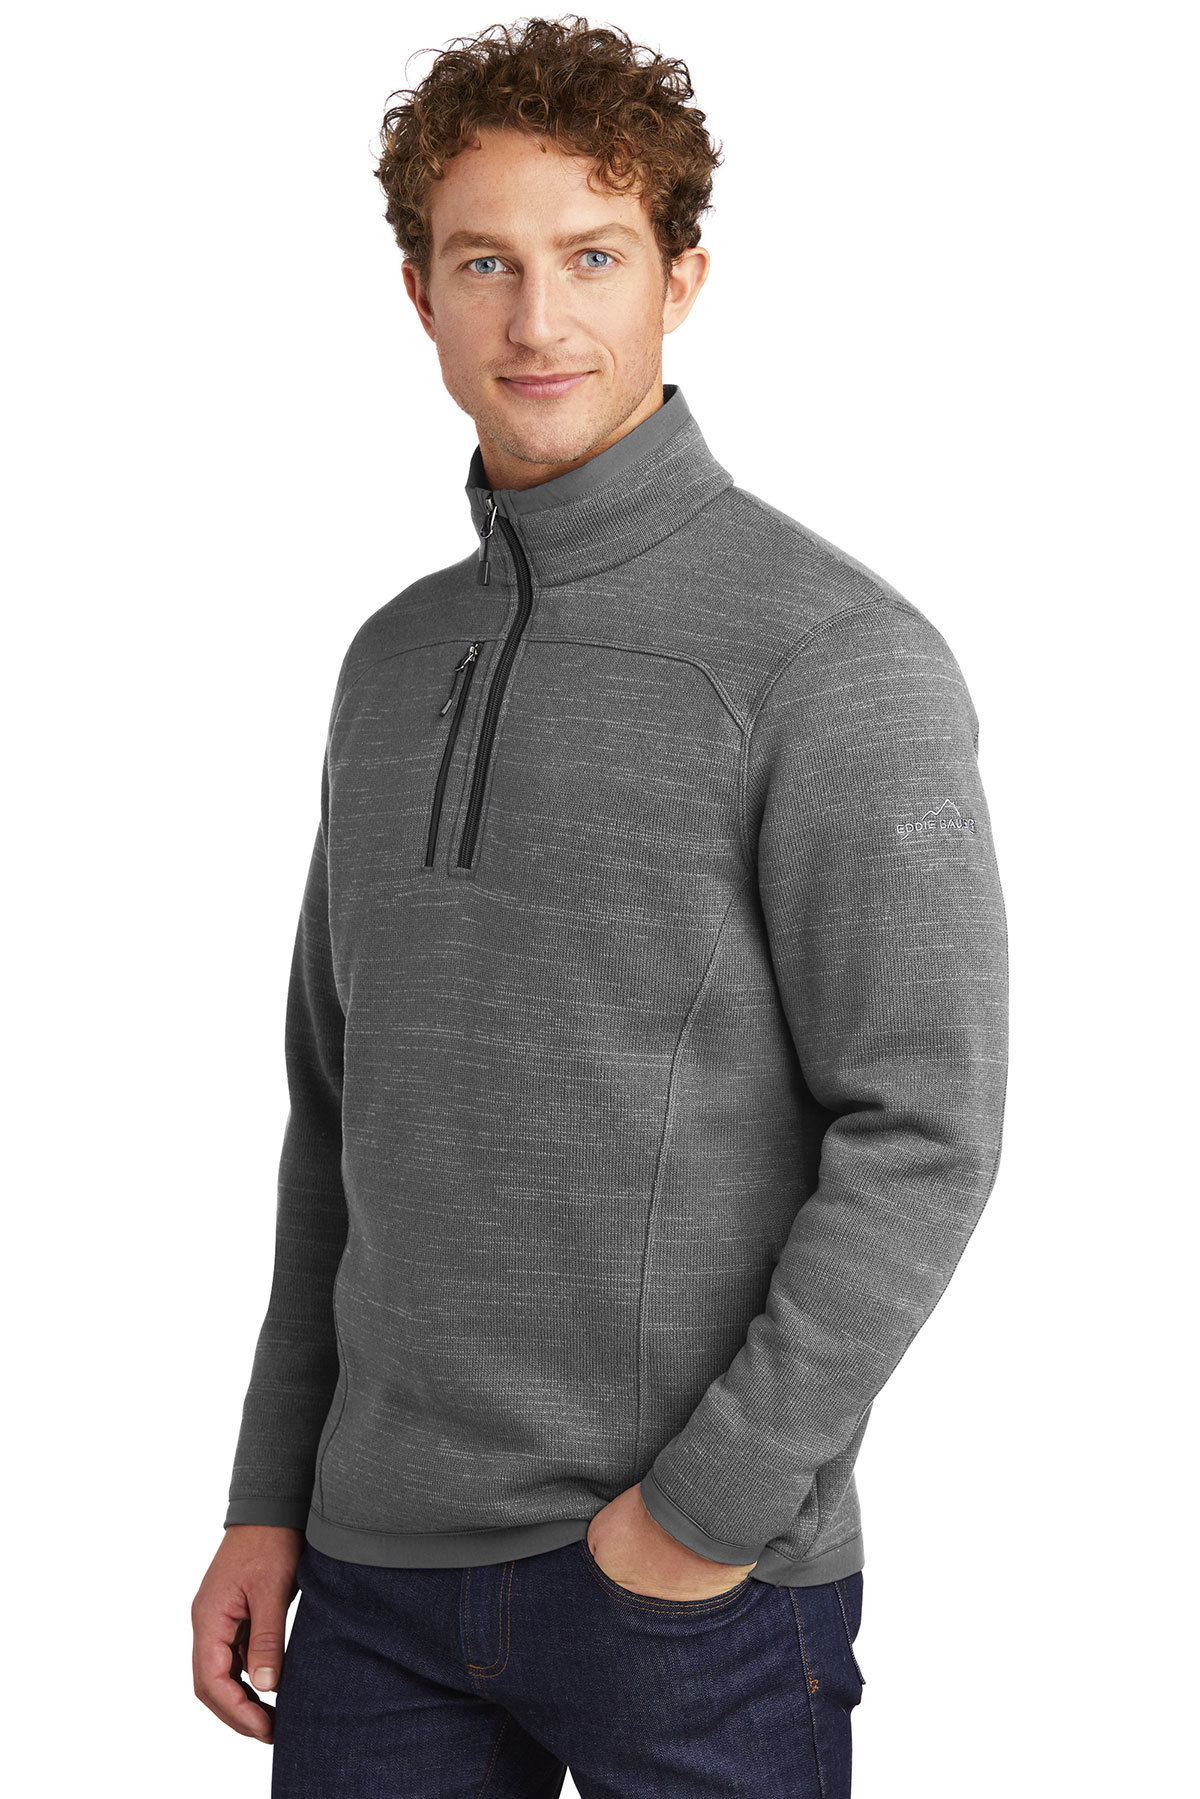 Eddie Bauer Sweater Fleece 1/4-Zip | Product | SanMar